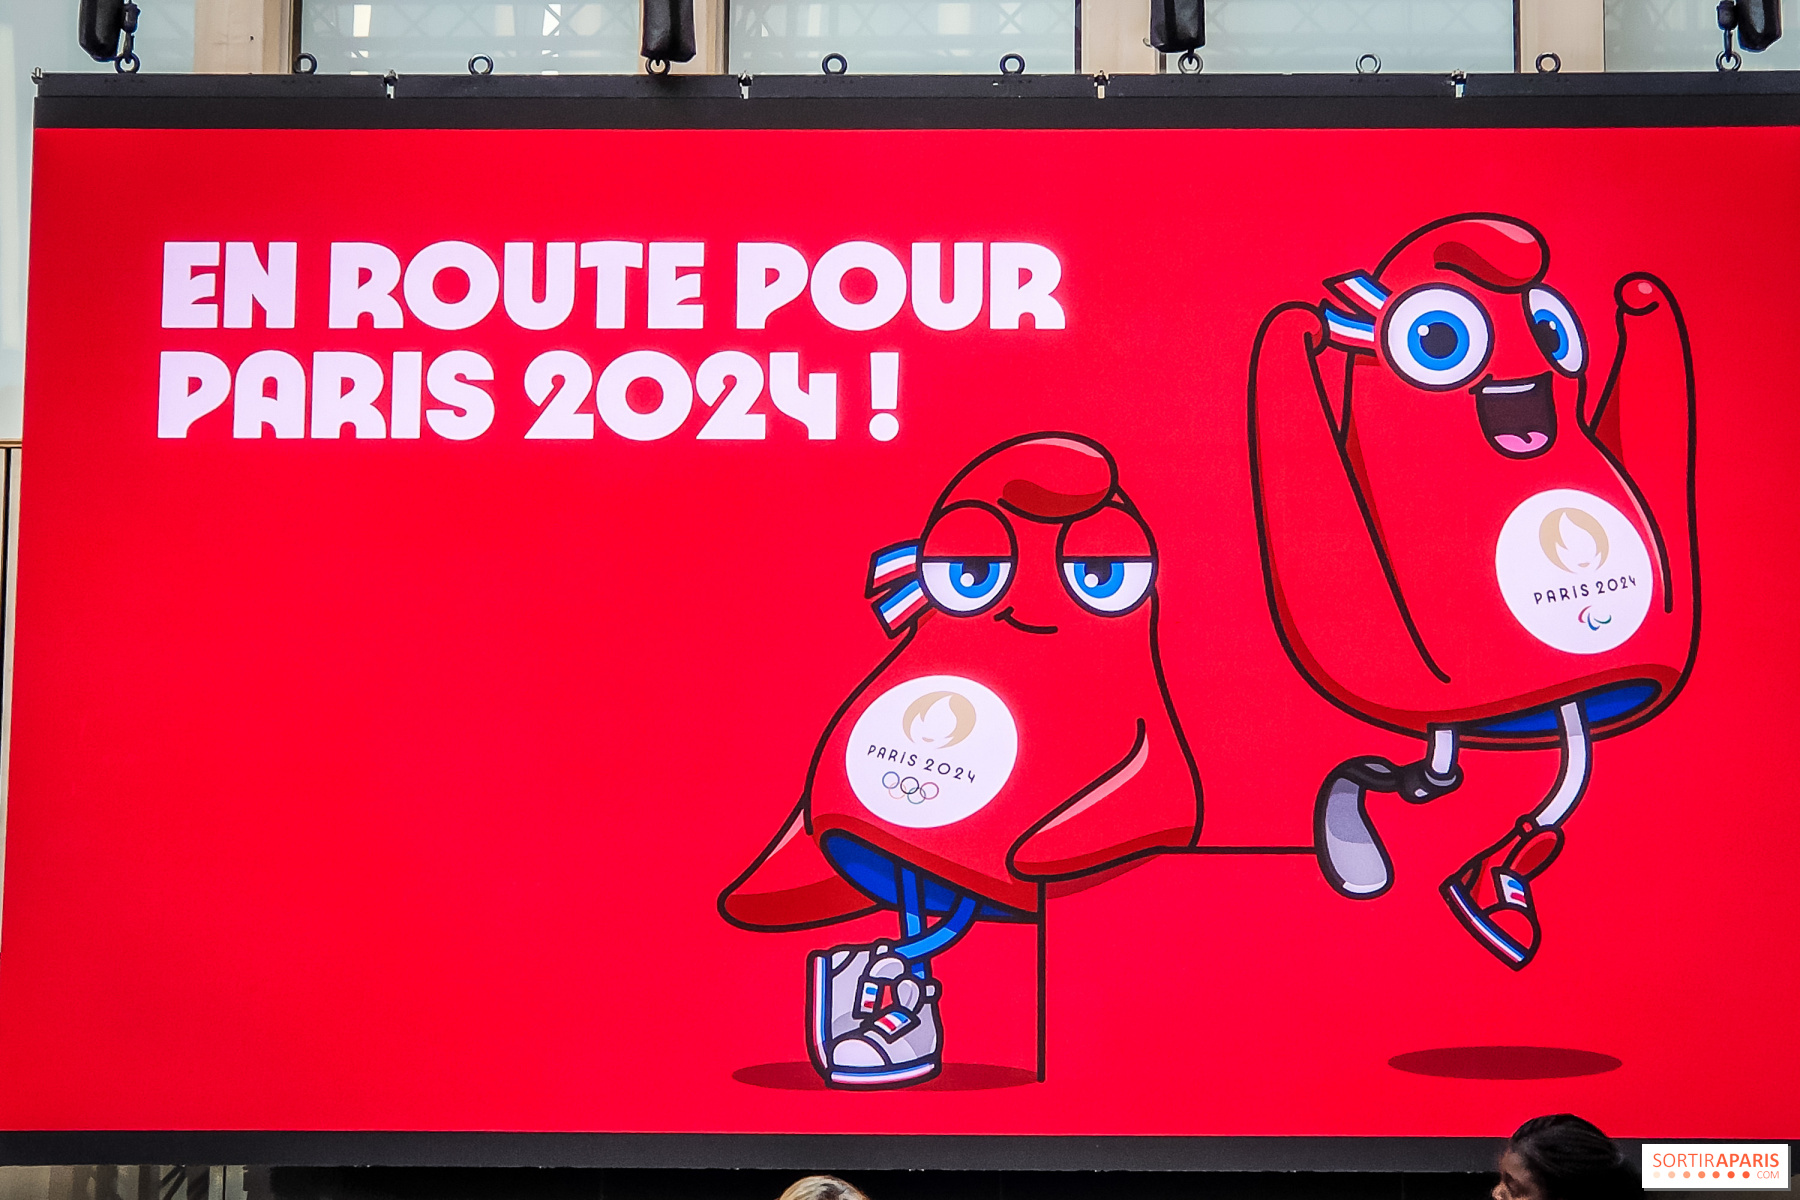 Les Phryges, mascottes officielles des Jeux de Paris 2024 • Paris